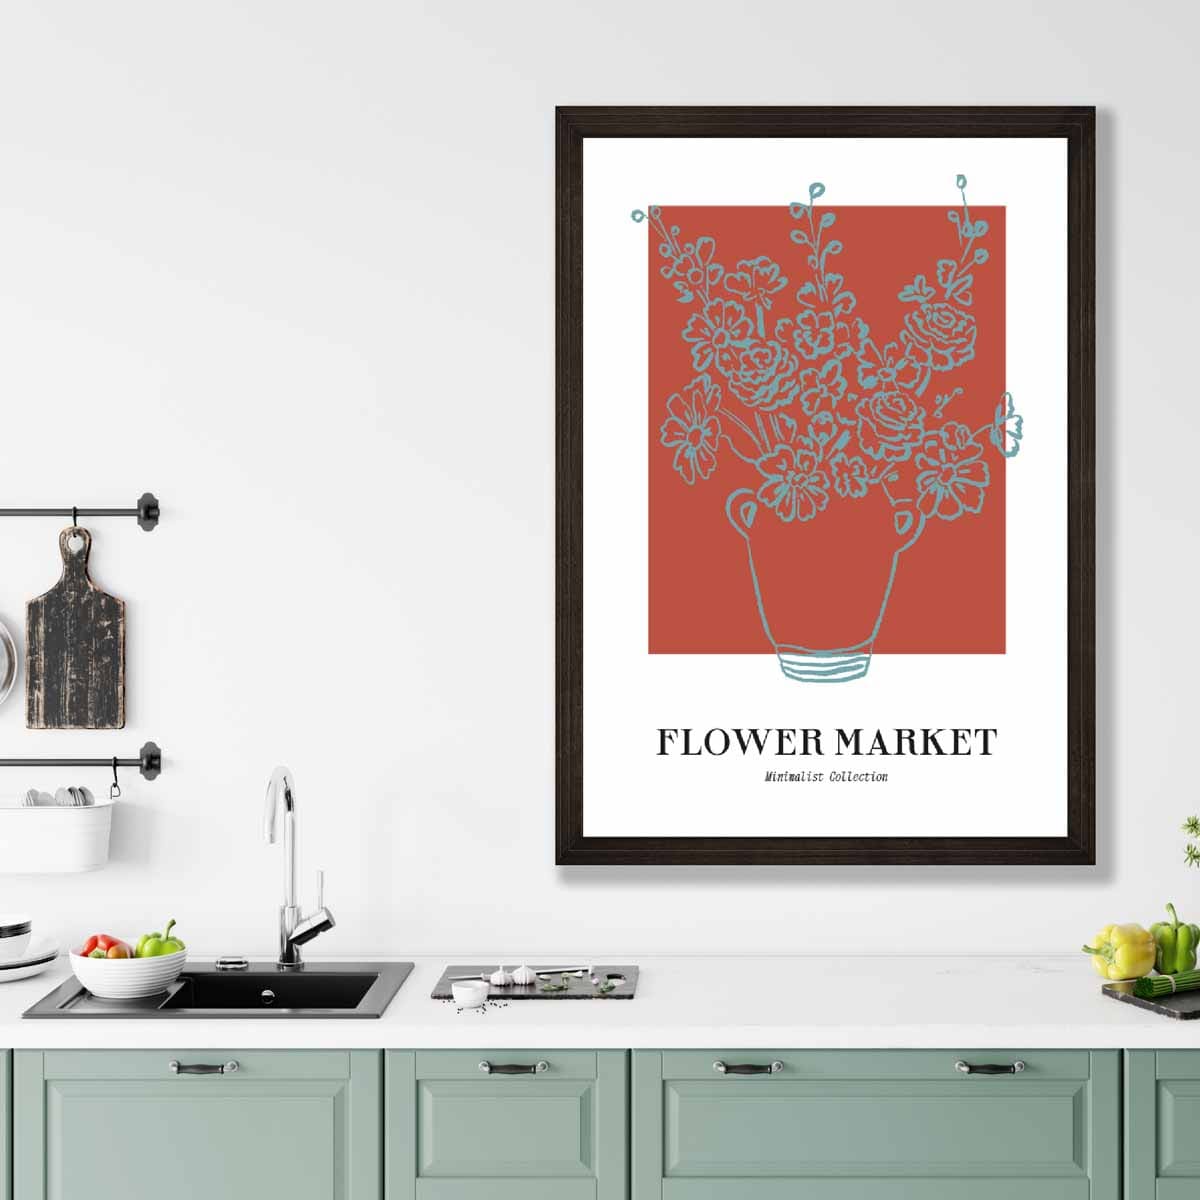 Flower Market Minimalist Poster Collection No 6 in Orange